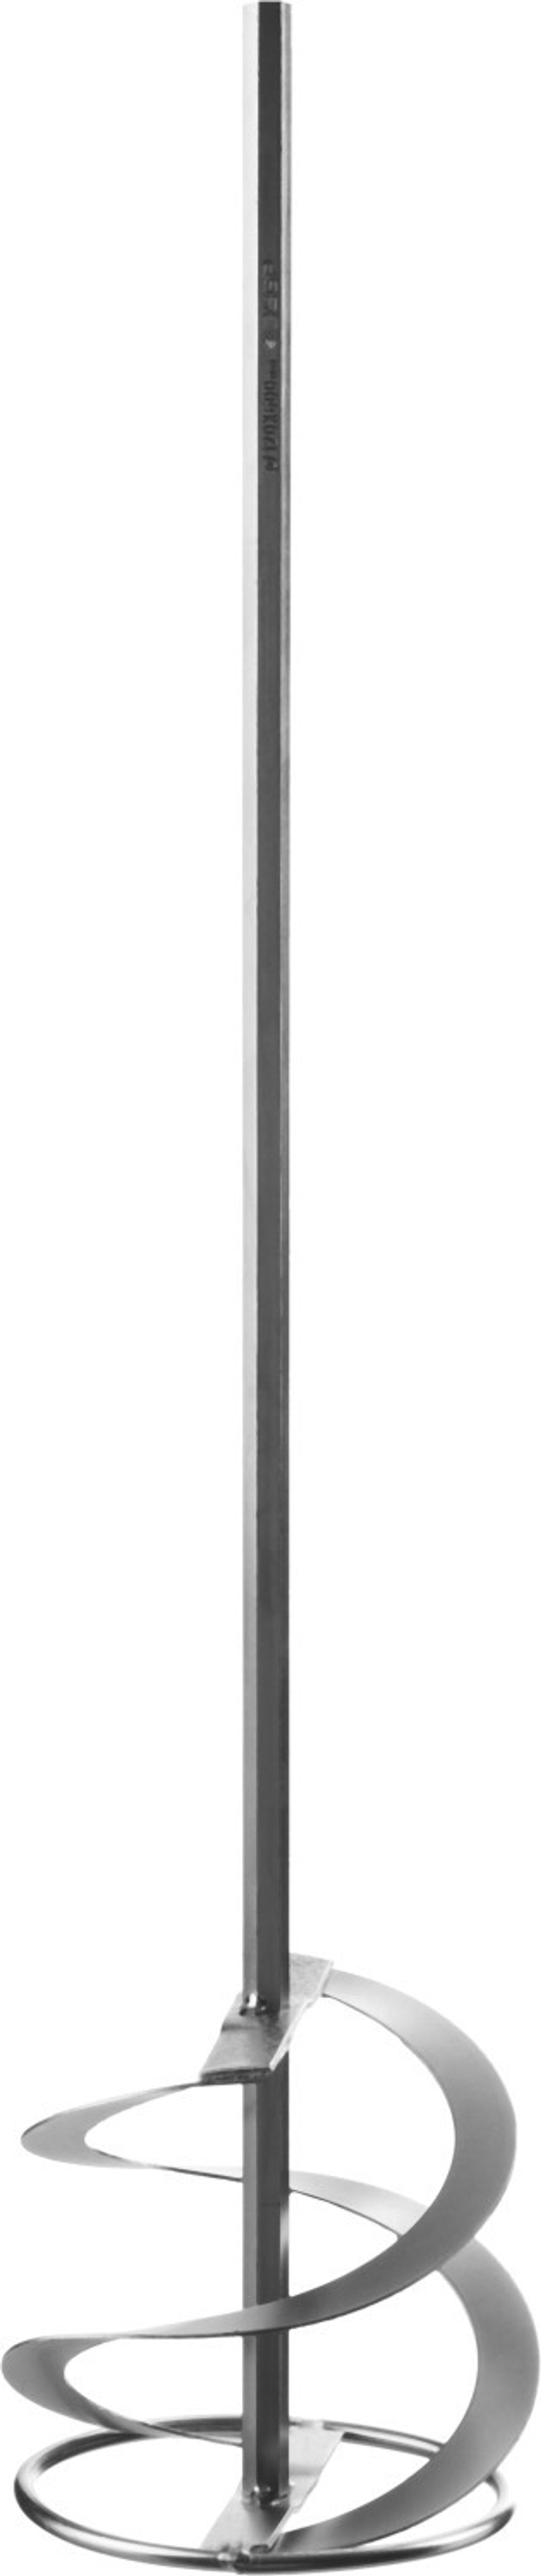 Миксер ЗУБР ″Профессионал″ для красок, шестигранный хвостовик, оцинкованный, на подвеске, 120х600мм